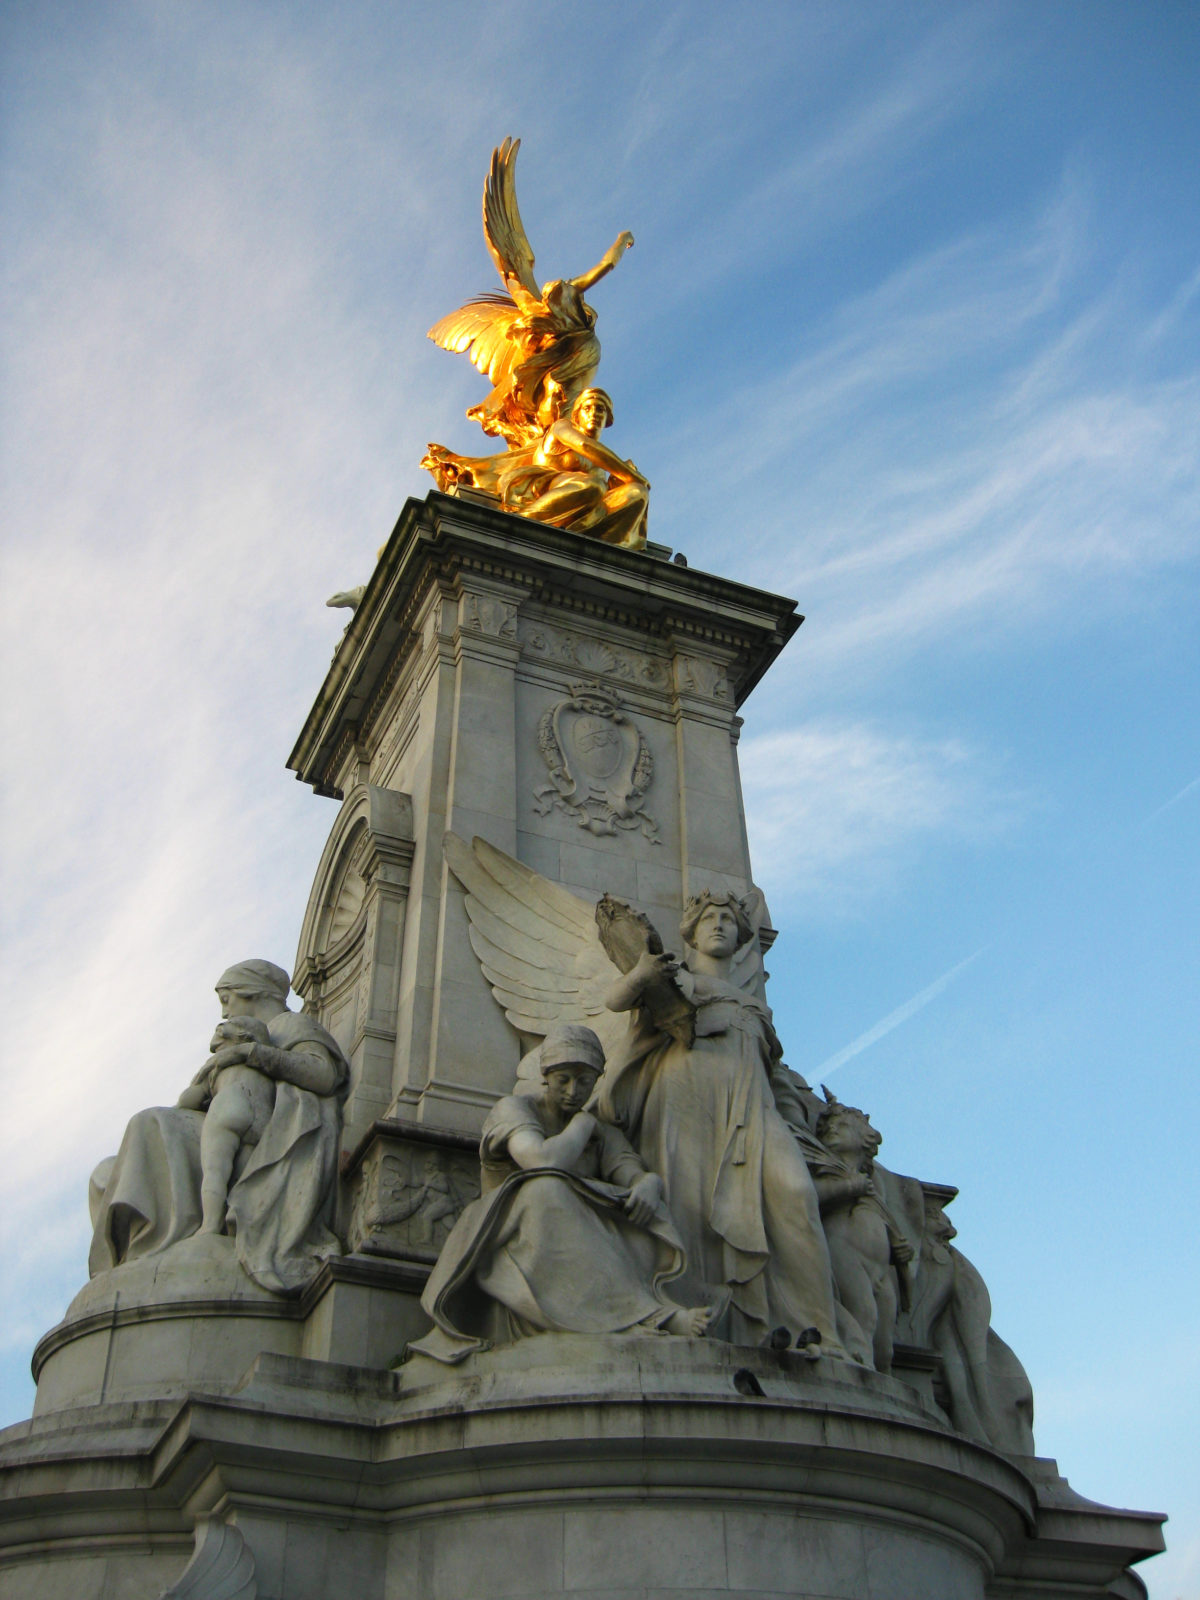 Queen Victoria Memorial in front of Buckingham Palace